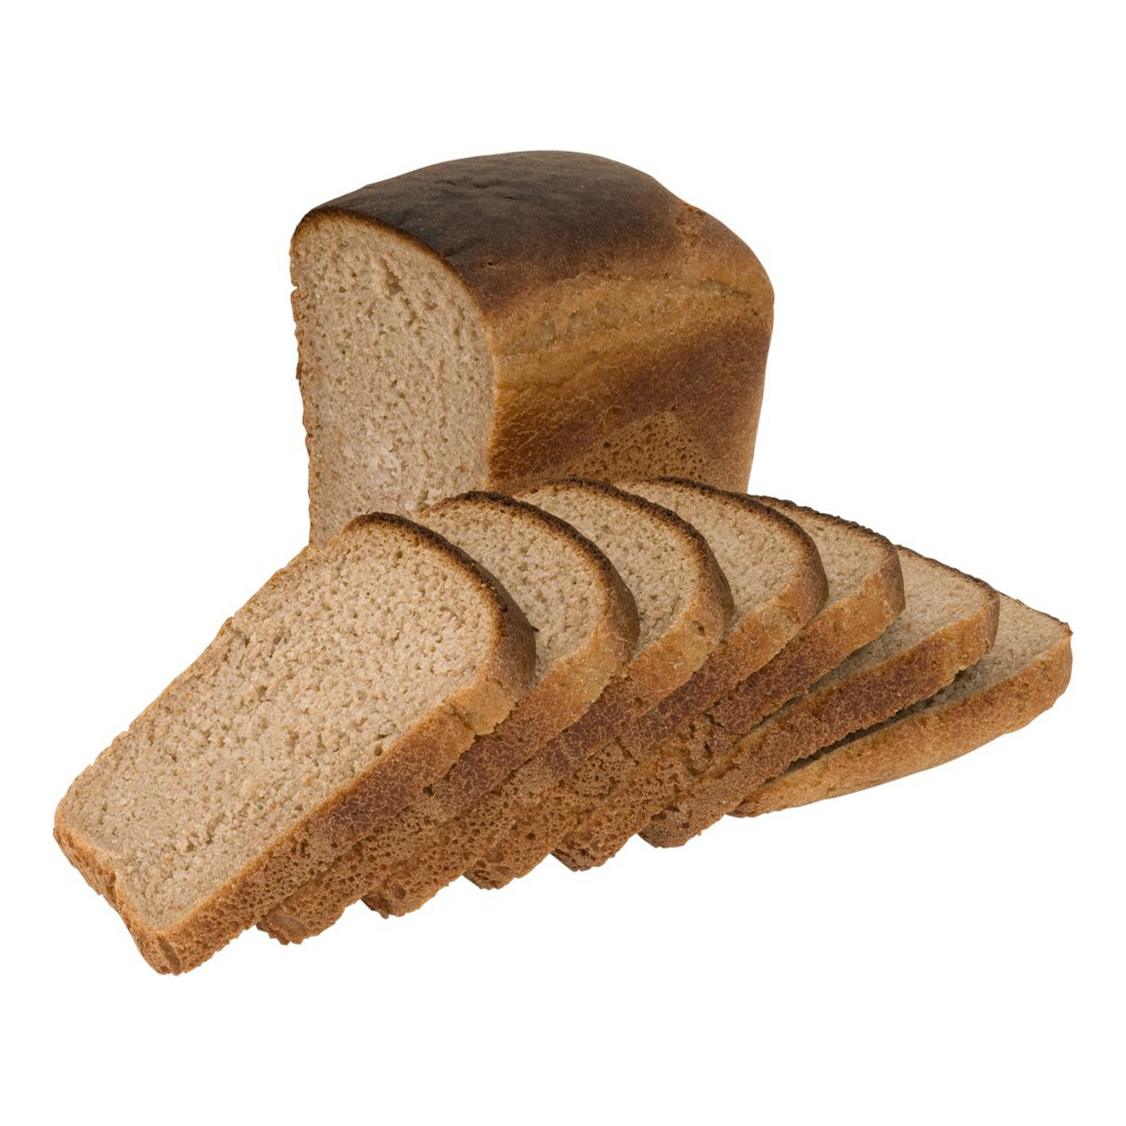 Ржано-пшеничный хлеб ржано-пшеничный хлеб